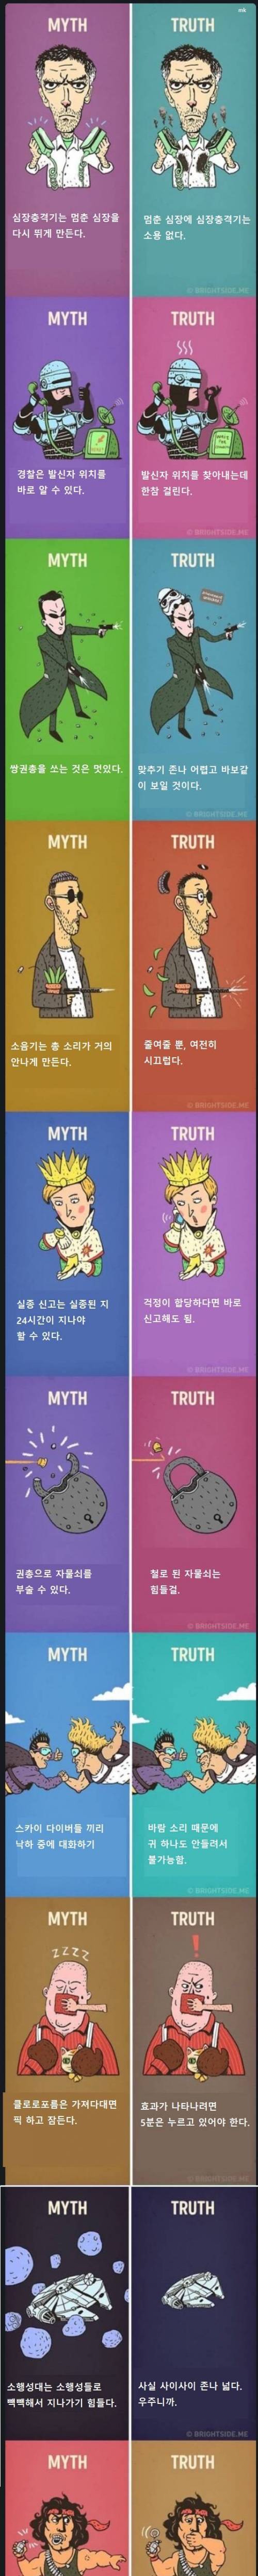 [스압] MYTH vs TRUTH.jpg